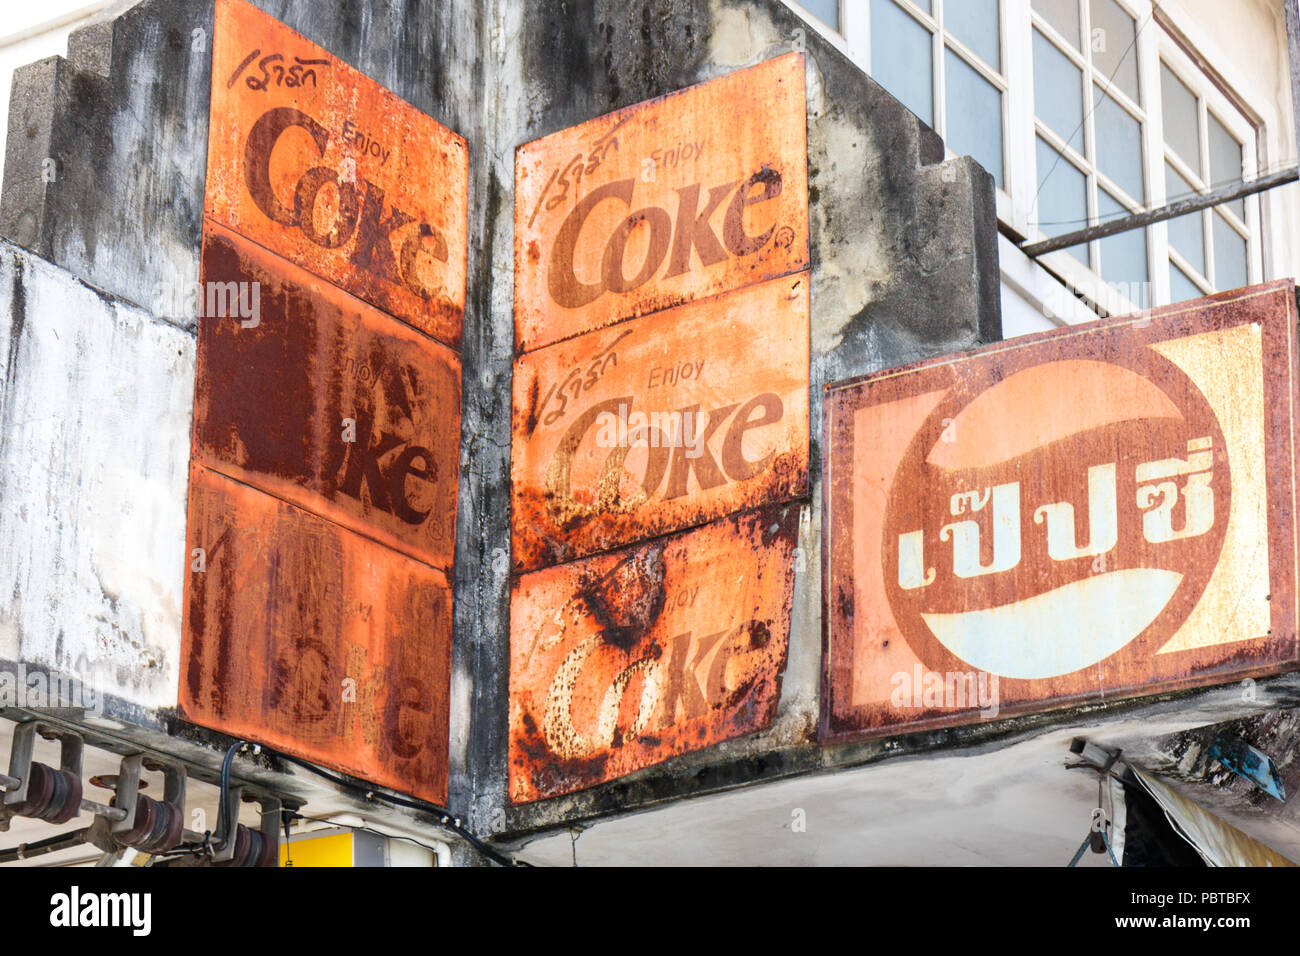 Phattalung, Thaïlande - 27 Février 2016 : Vieux Coke et Pepsi signes. Les deux boissons sont populaires. Banque D'Images